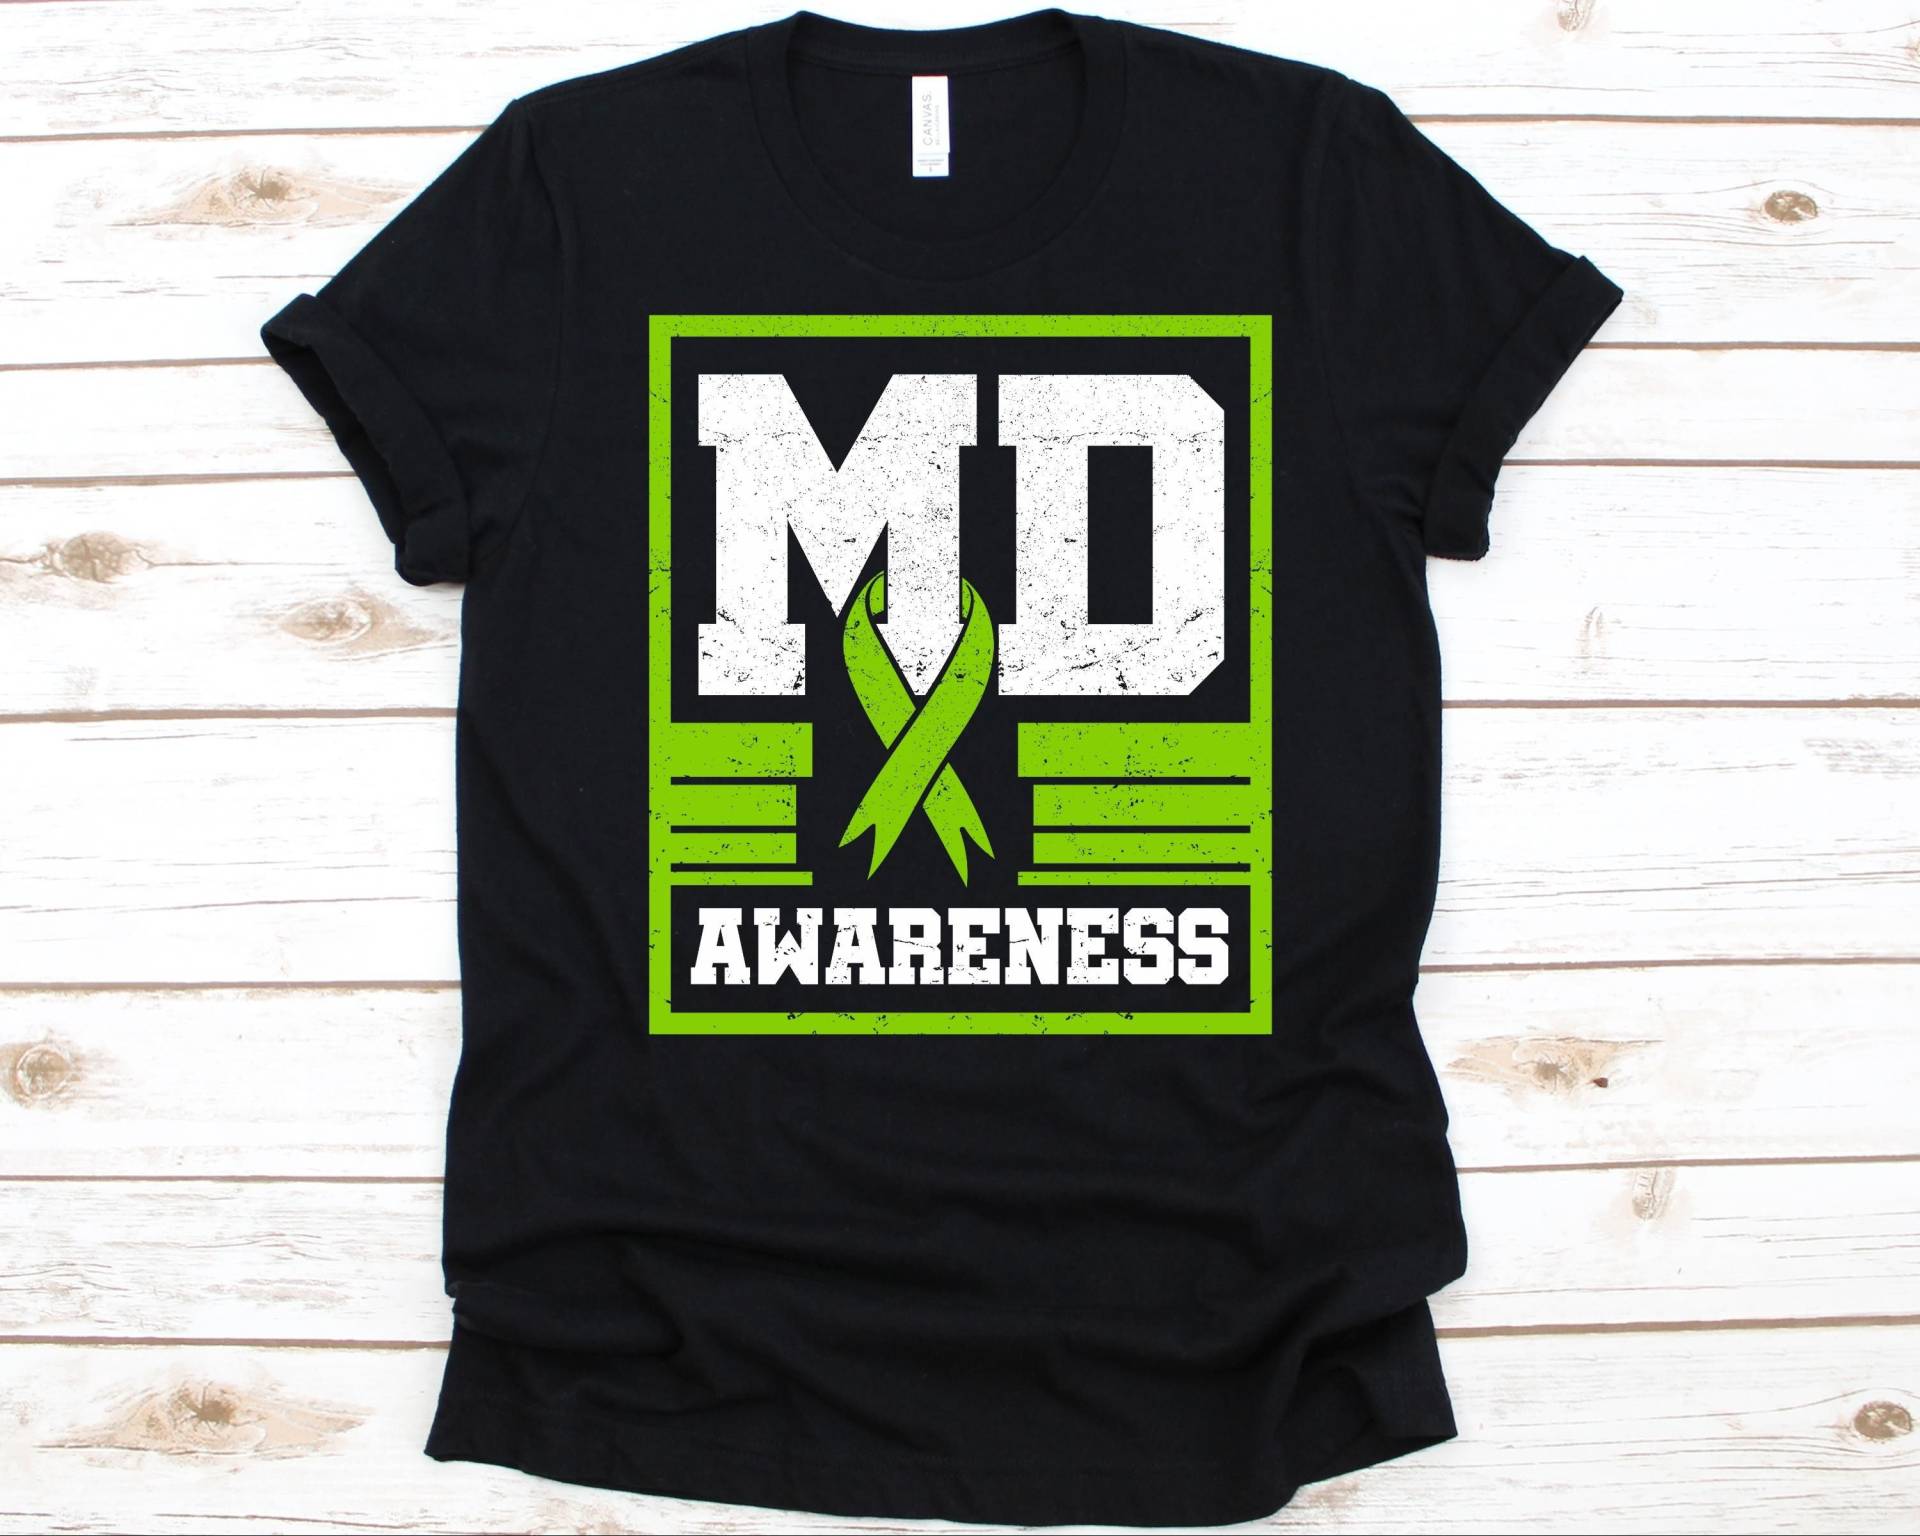 Md Awareness Shirt, Geschenk Für Muskeldystrophie Überlebende, National Monat, Grünes Bewusstseinsband, Grüne Farbe von AbbysDesignFactory